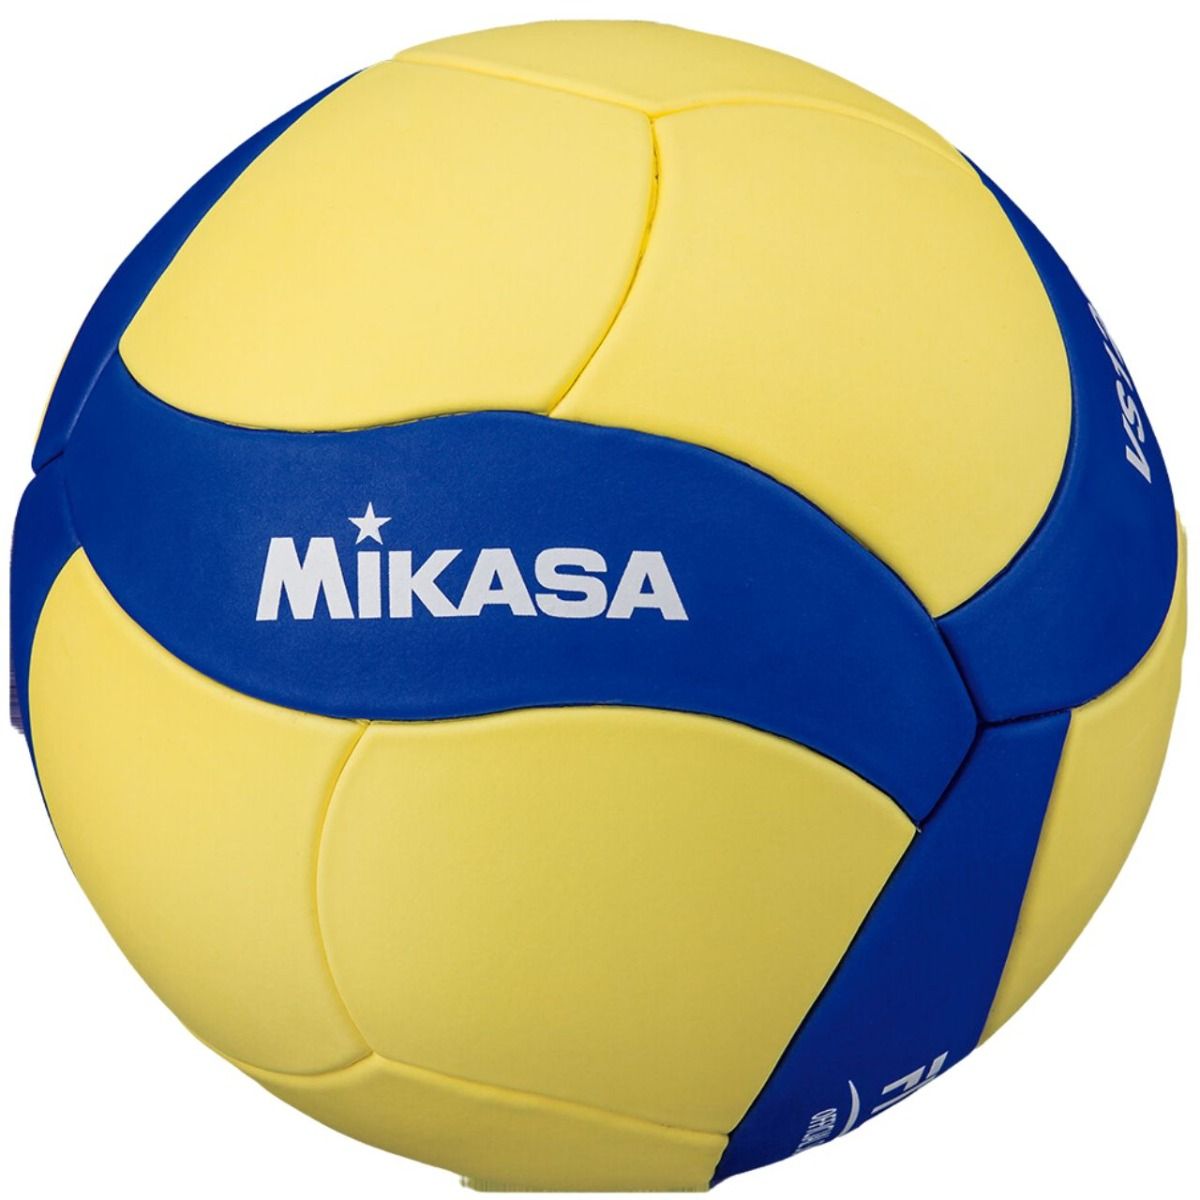 Mikasa Volleyball VS123W